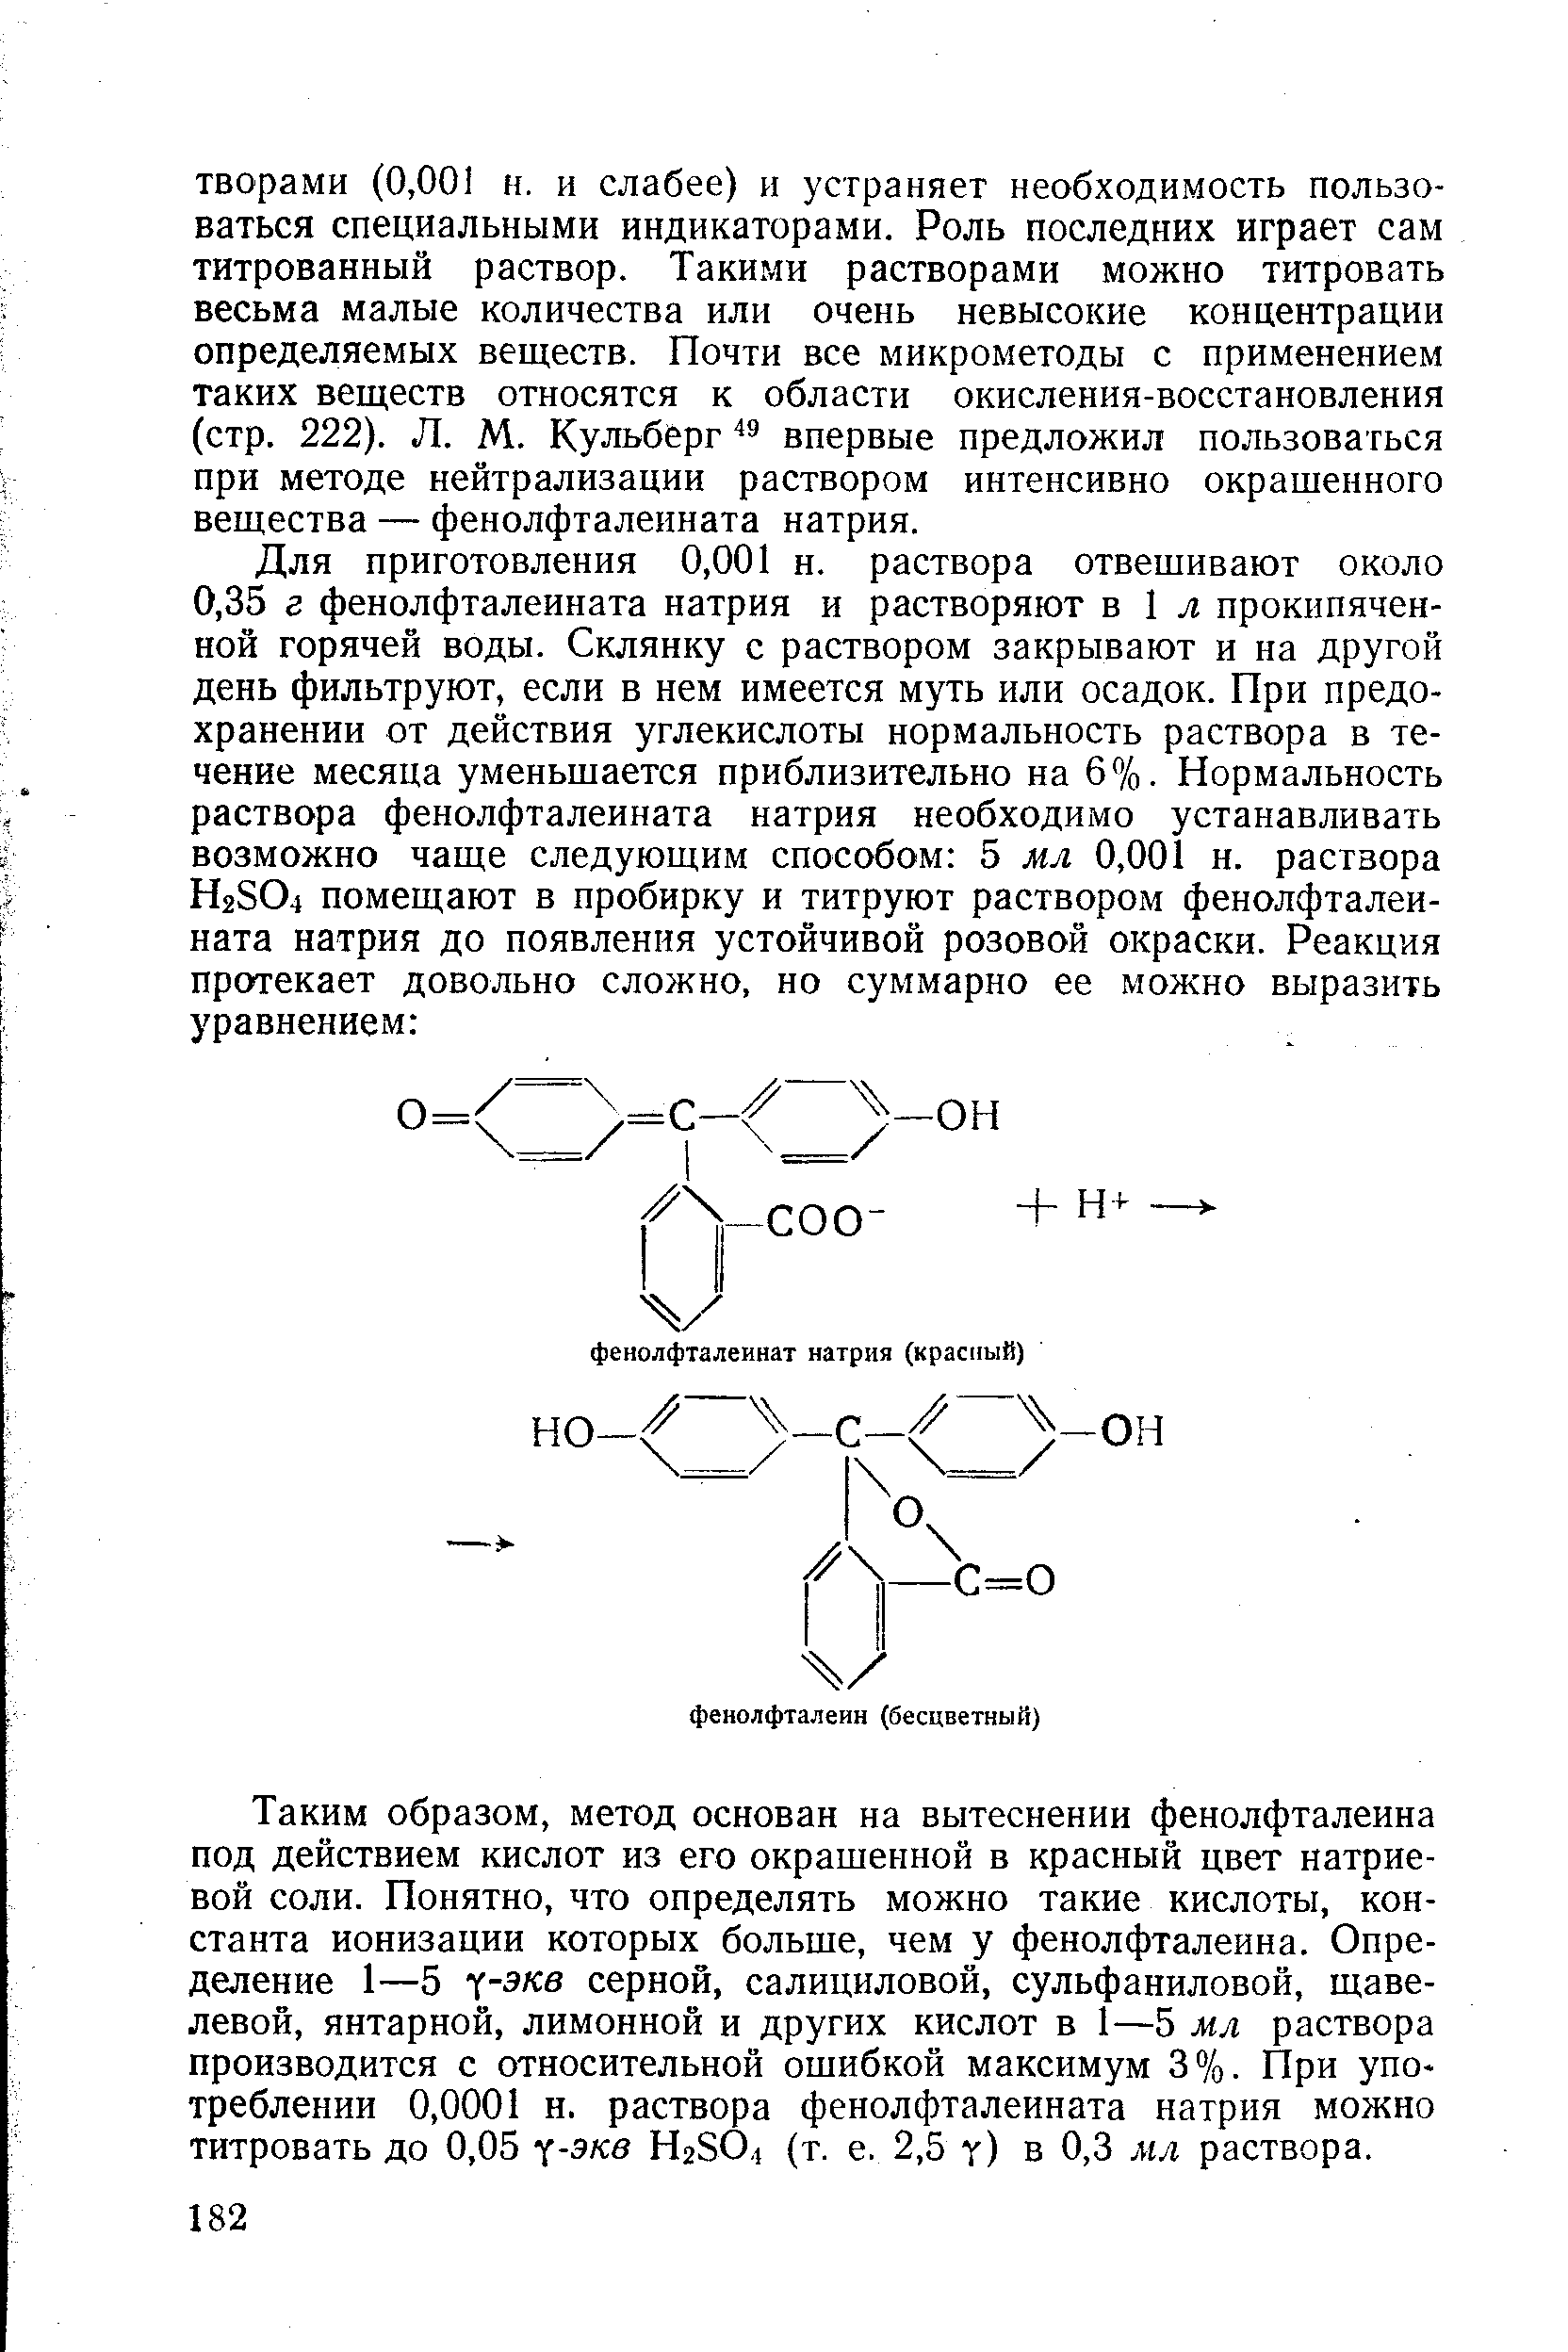 Таким образом, метод основан на вытеснении фенолфталеина под действием кислот из его окрашенной в красный цвет натриевой соли. Понятно, что определять можно такие кислоты, константа ионизации которых больше, чем у фенолфталеина. Определение 1—5 - -экв серной, салициловой, сульфаниловой, щавелевой, янтарной, лимонной и других кислот в 1—5 мл раствора производится с относительной ошибкой максимум 3%. При упо треблении 0,0001 н. раствора фенолфталеината натрия можно титровать до 0,05 -экв НгЗО, (т. е. 2,5 у) в 0,3 мл раствора.